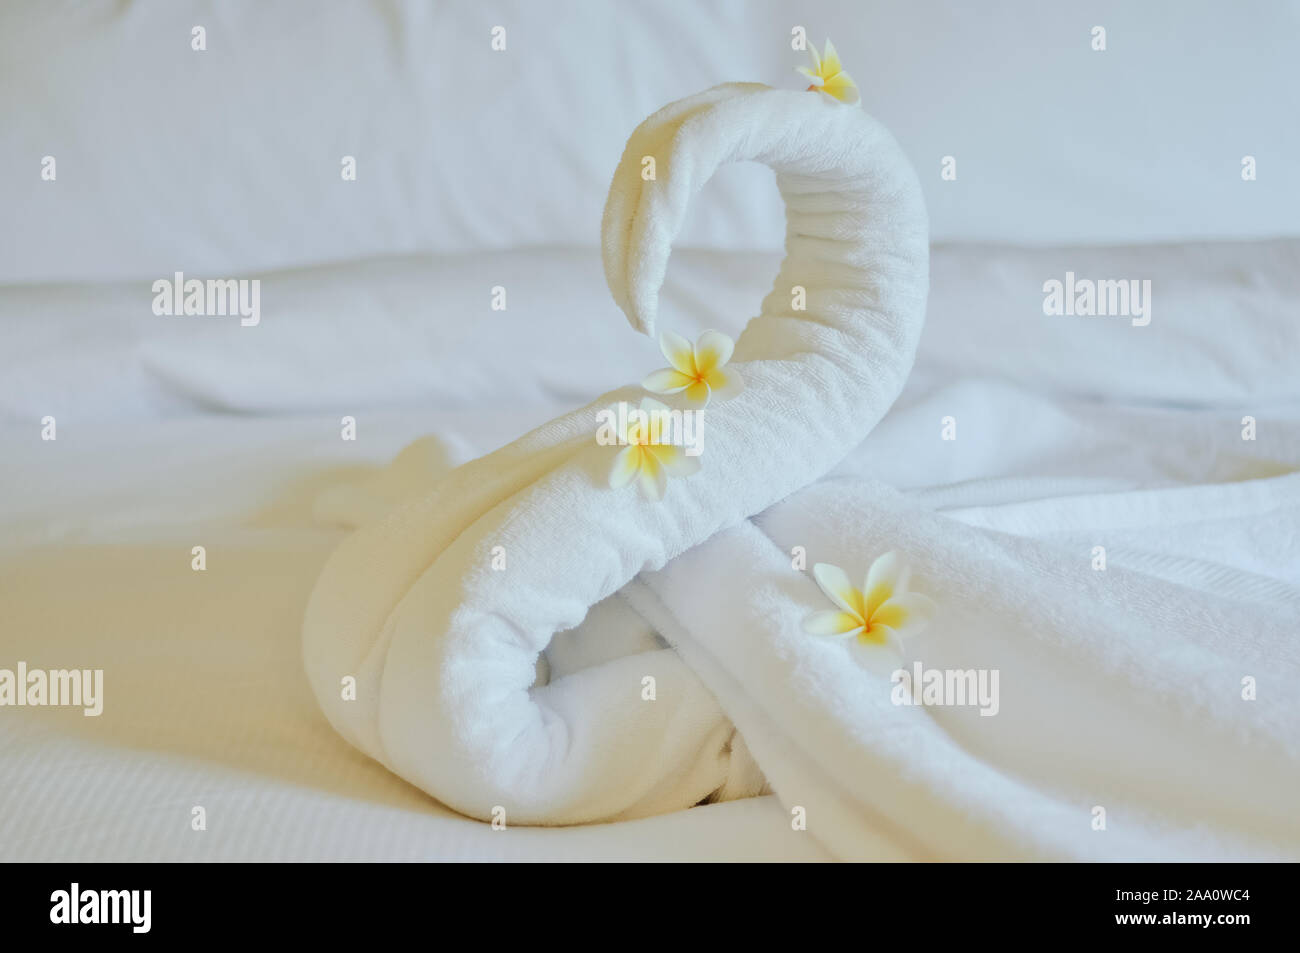 Bellissimo cigno dal bianco asciugamano da bagno decorare sul letto bianco. asciugamano swan con fiori di attualità - frangipani. Bel saluto dall'hotel. Foto Stock